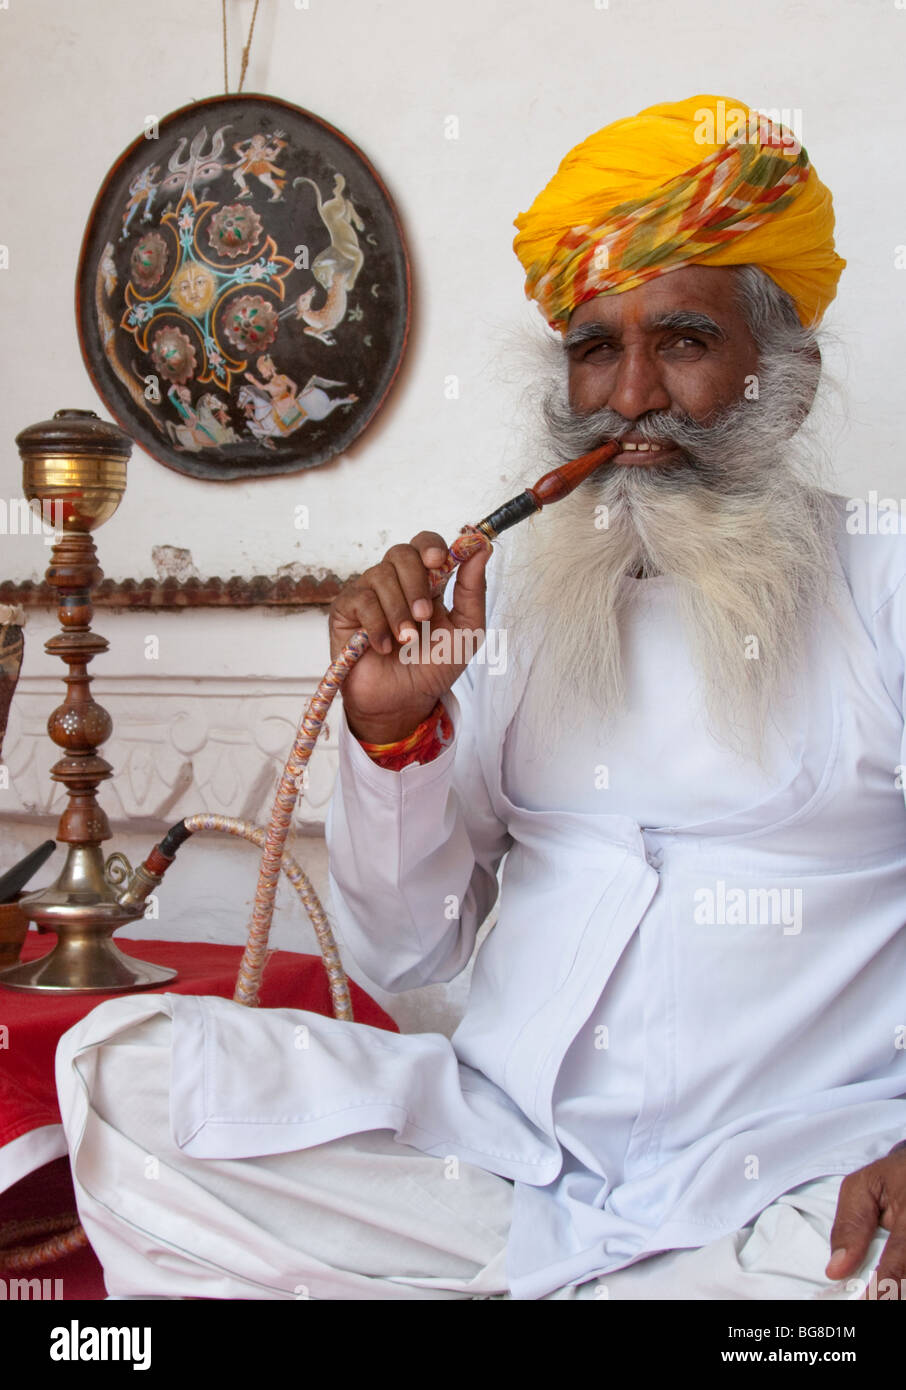 Indian man smoking hookah pipe Stock Photo